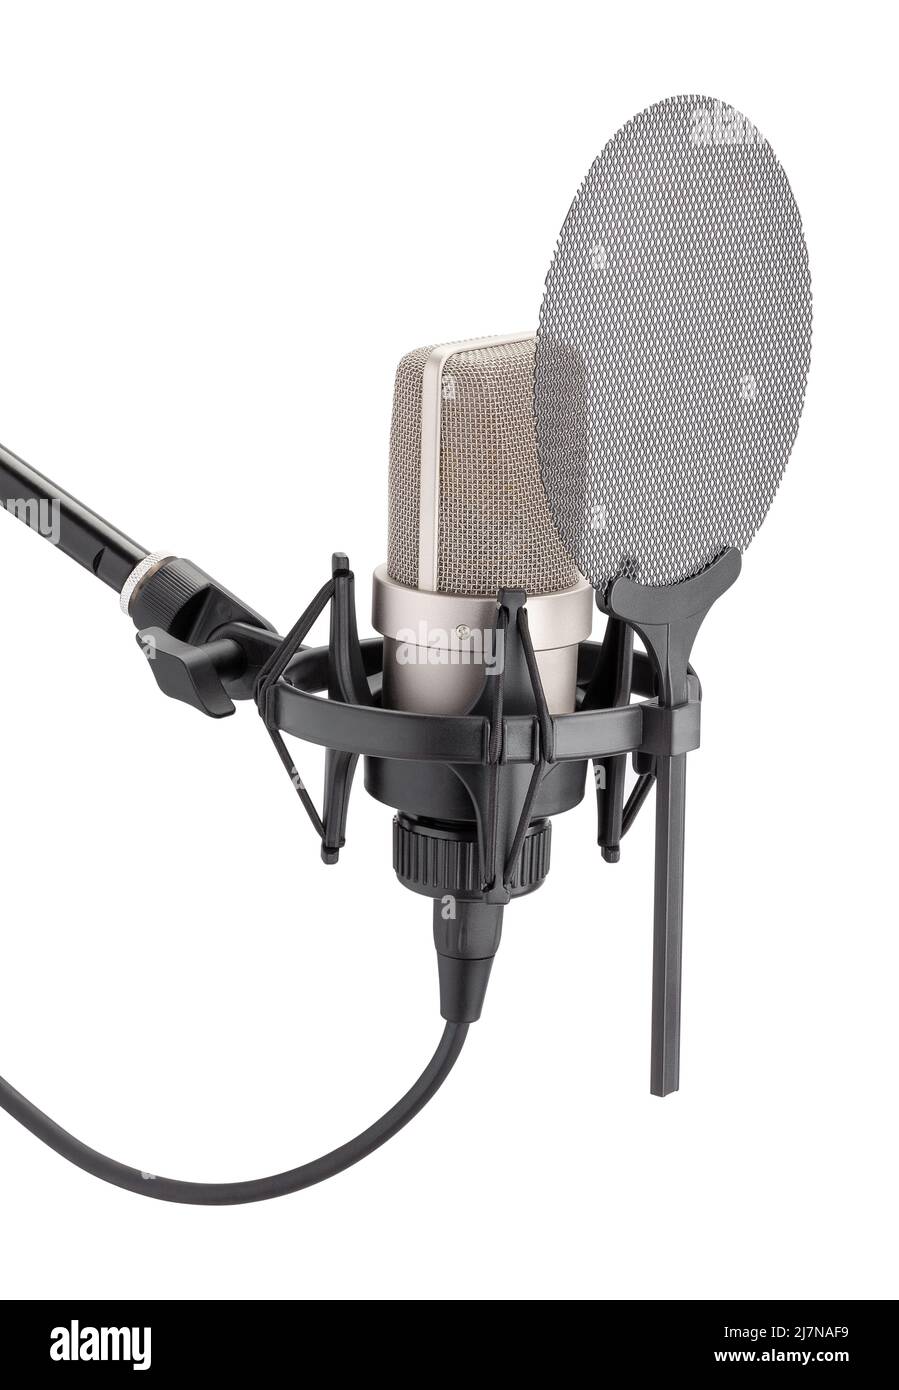 microphone sur support antichoc avec chemin de filtre anti-bruit isolé sur blanc Banque D'Images